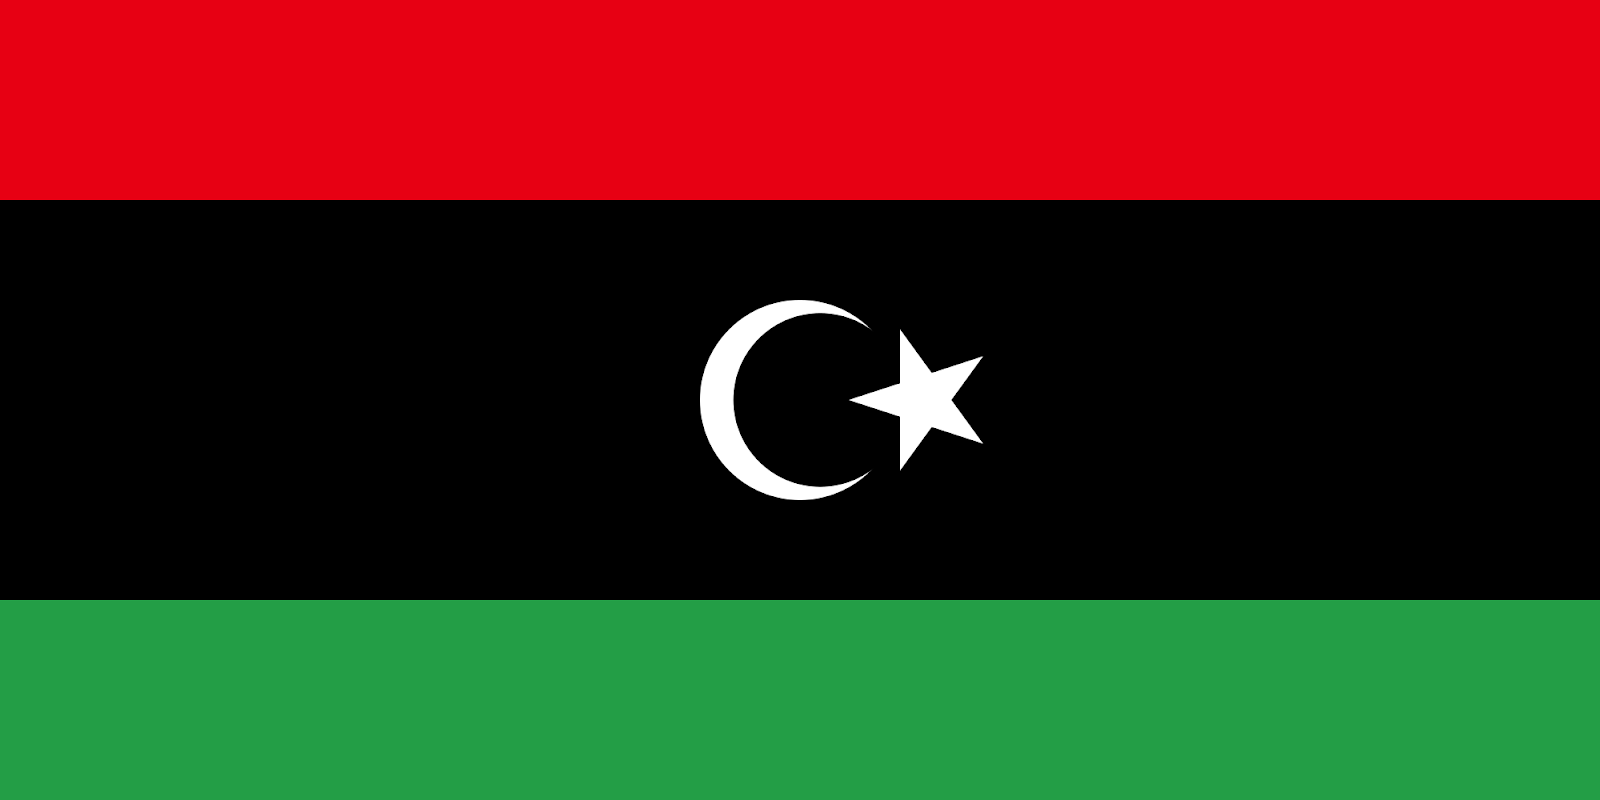 Image result for libya flag